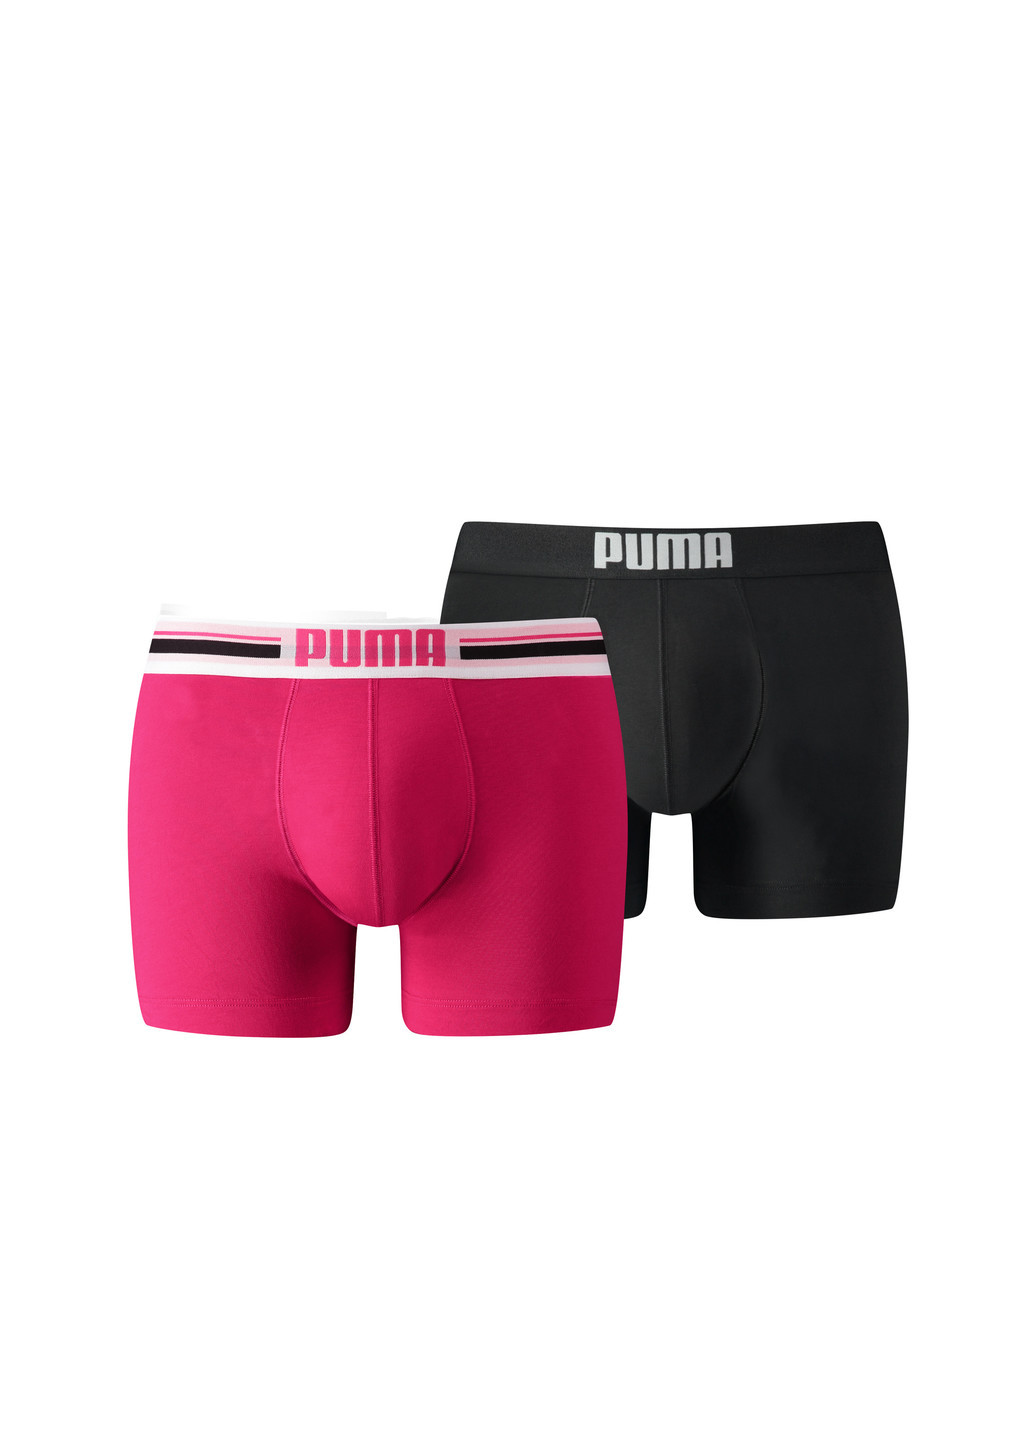 Мужское нижнее белье Puma Placed Logo Boxer Shorts 2 Pack розовые спортивные